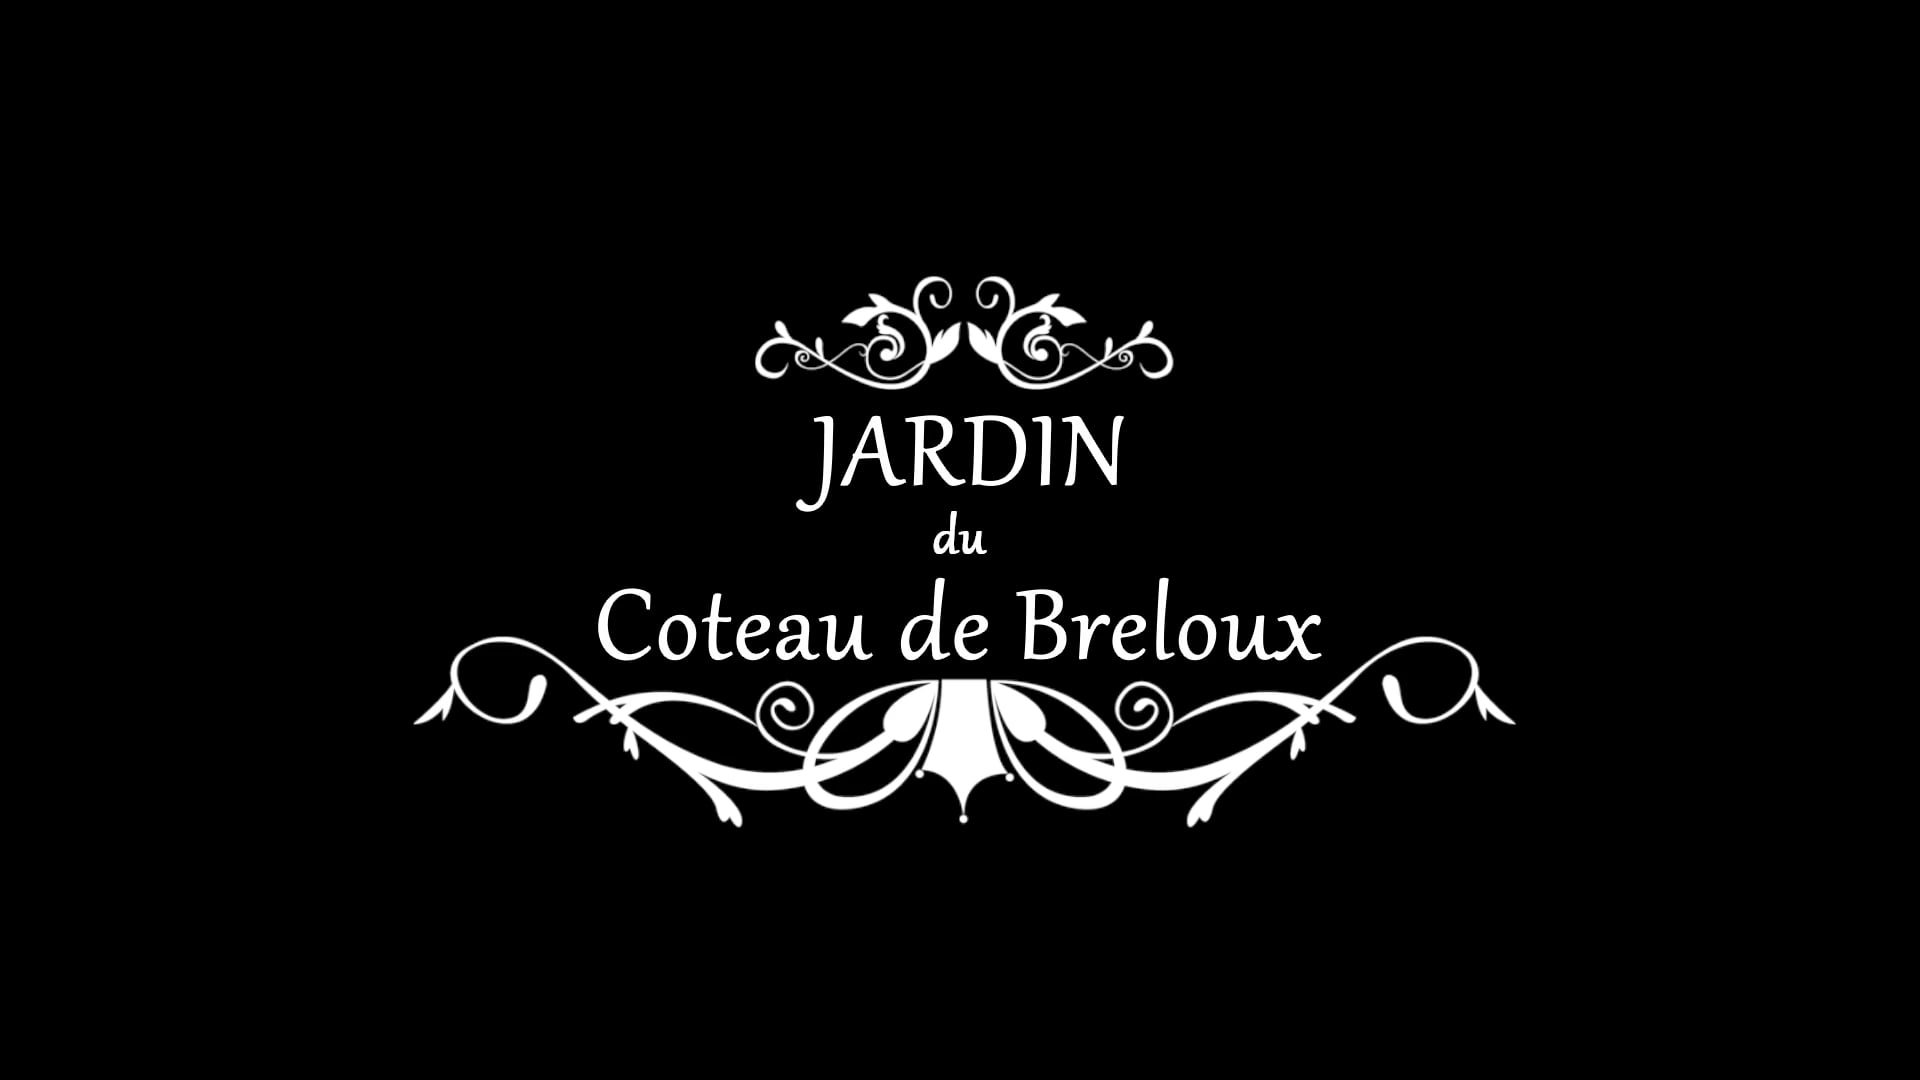 Jardin du Coteau de Breloux on Vimeo